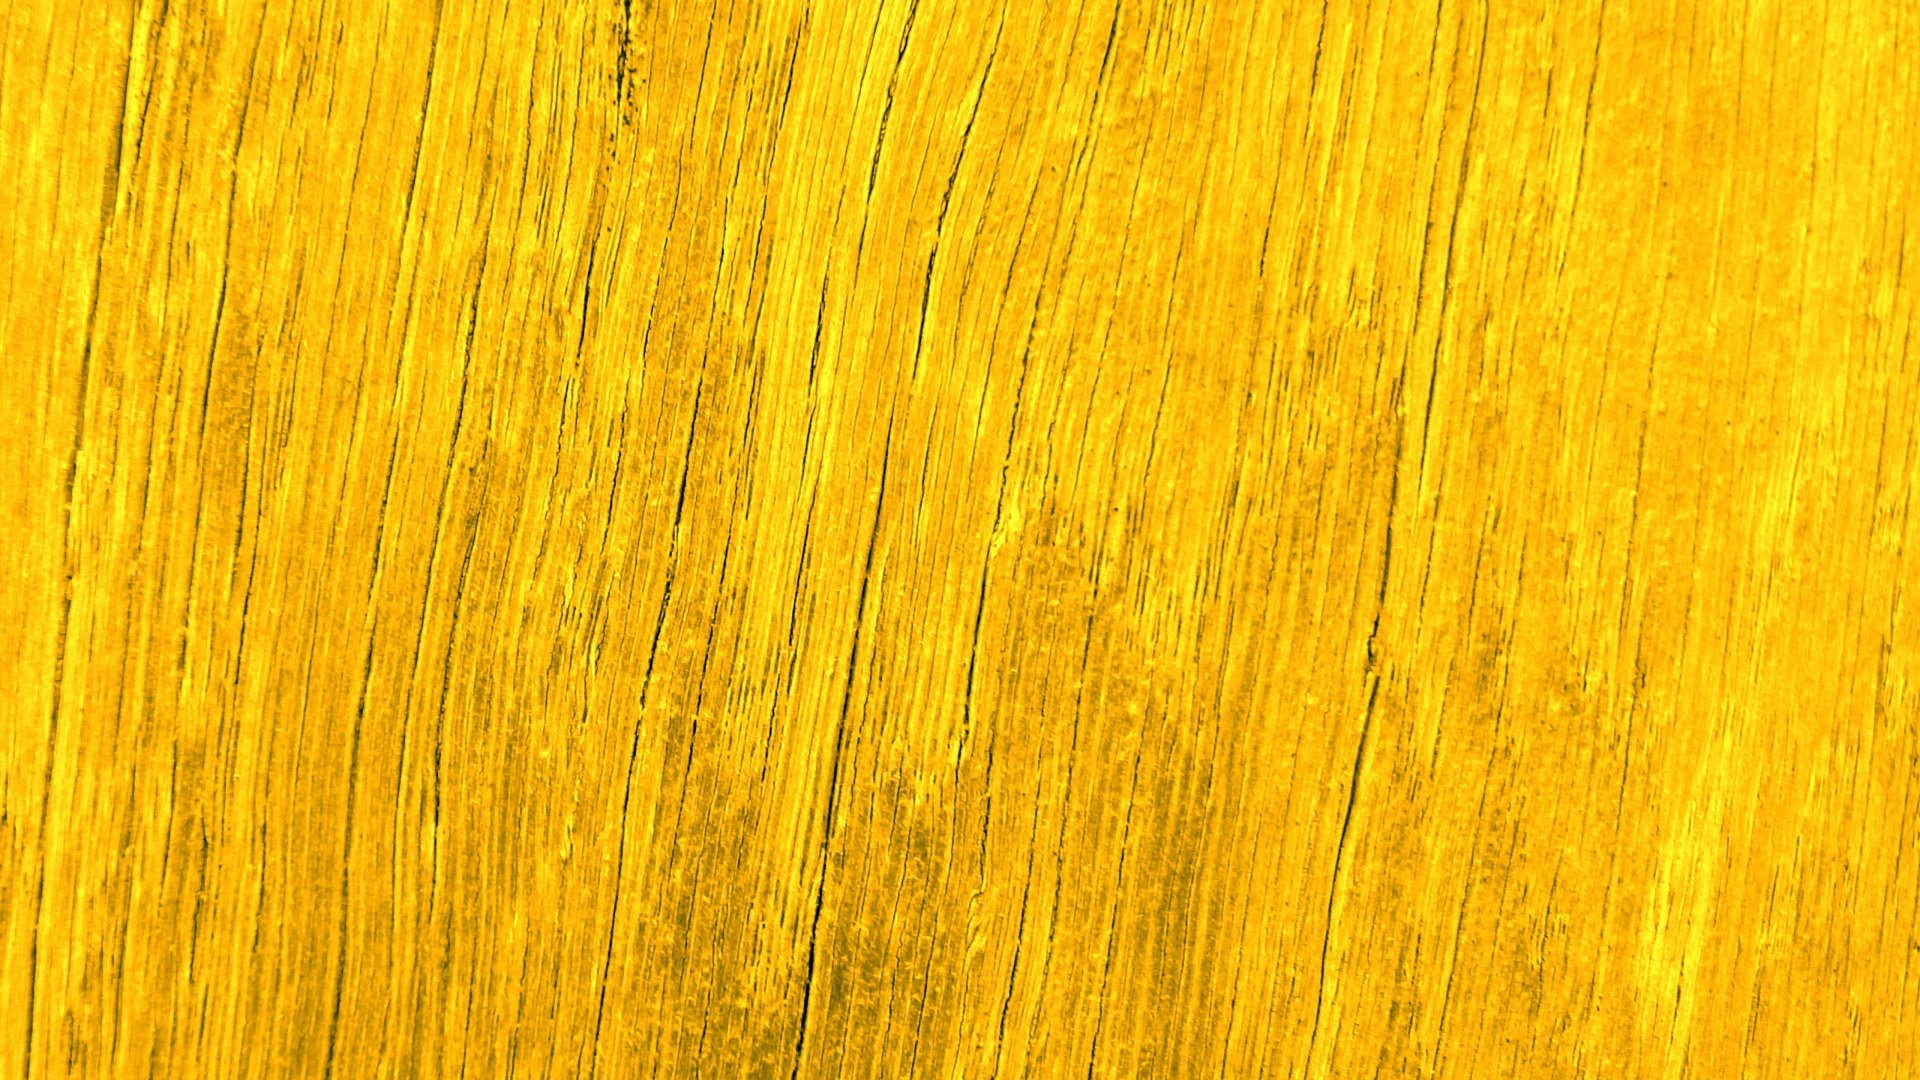 Цвет золотое дерево. Еллоу Вуд. Фактура дерева. Желтая древесина. Деревянные доски желтые.